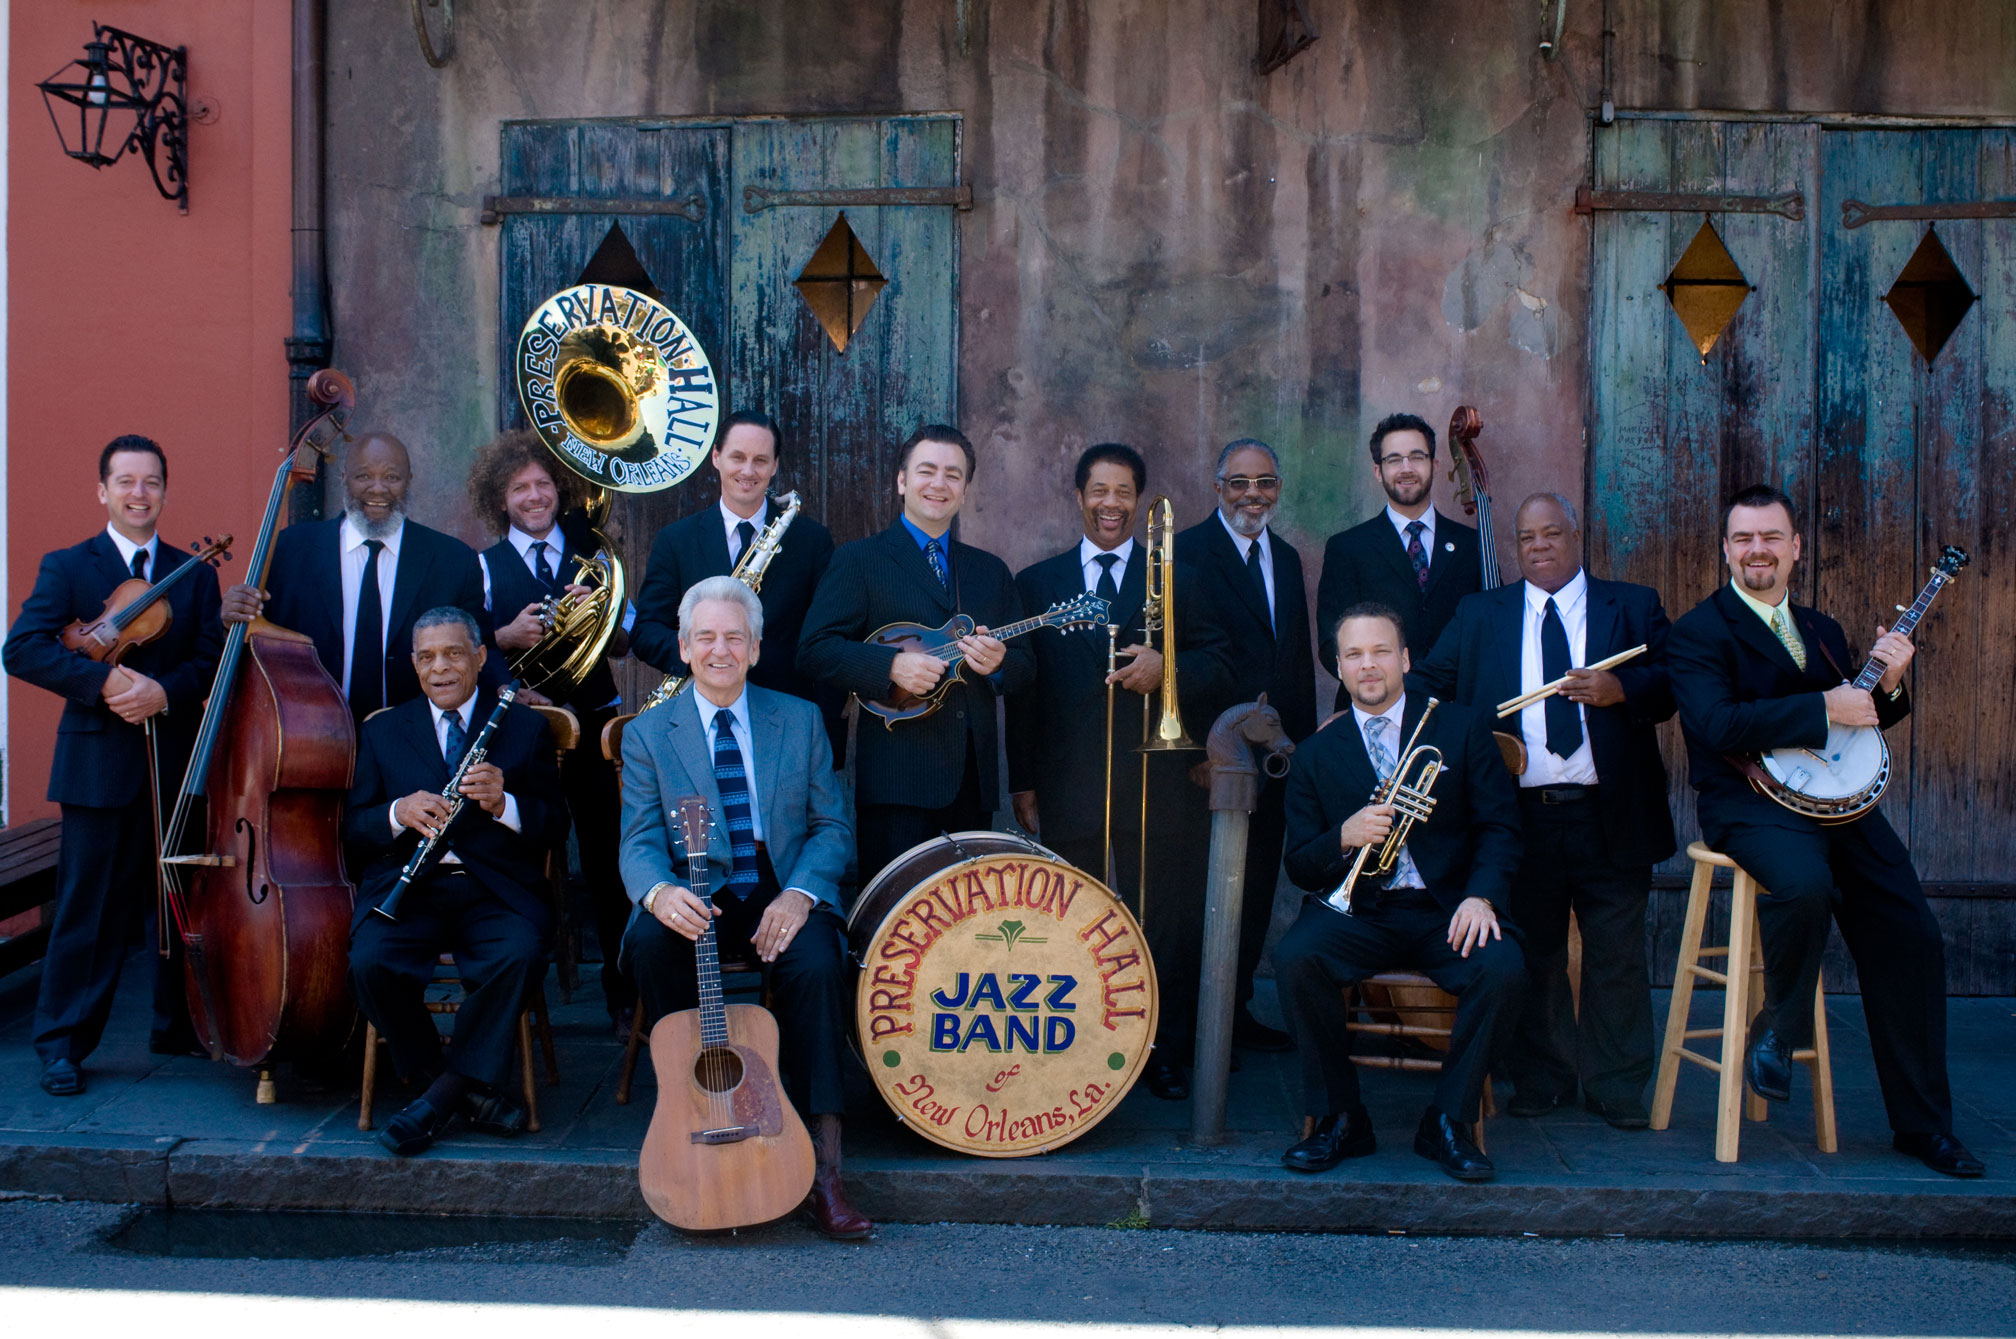 Песни джаз банды. Джаз бэнд. Джаз Биг бэнд Америка. Джаз бэнд оркестра. Preservation Hall Jazz Band.